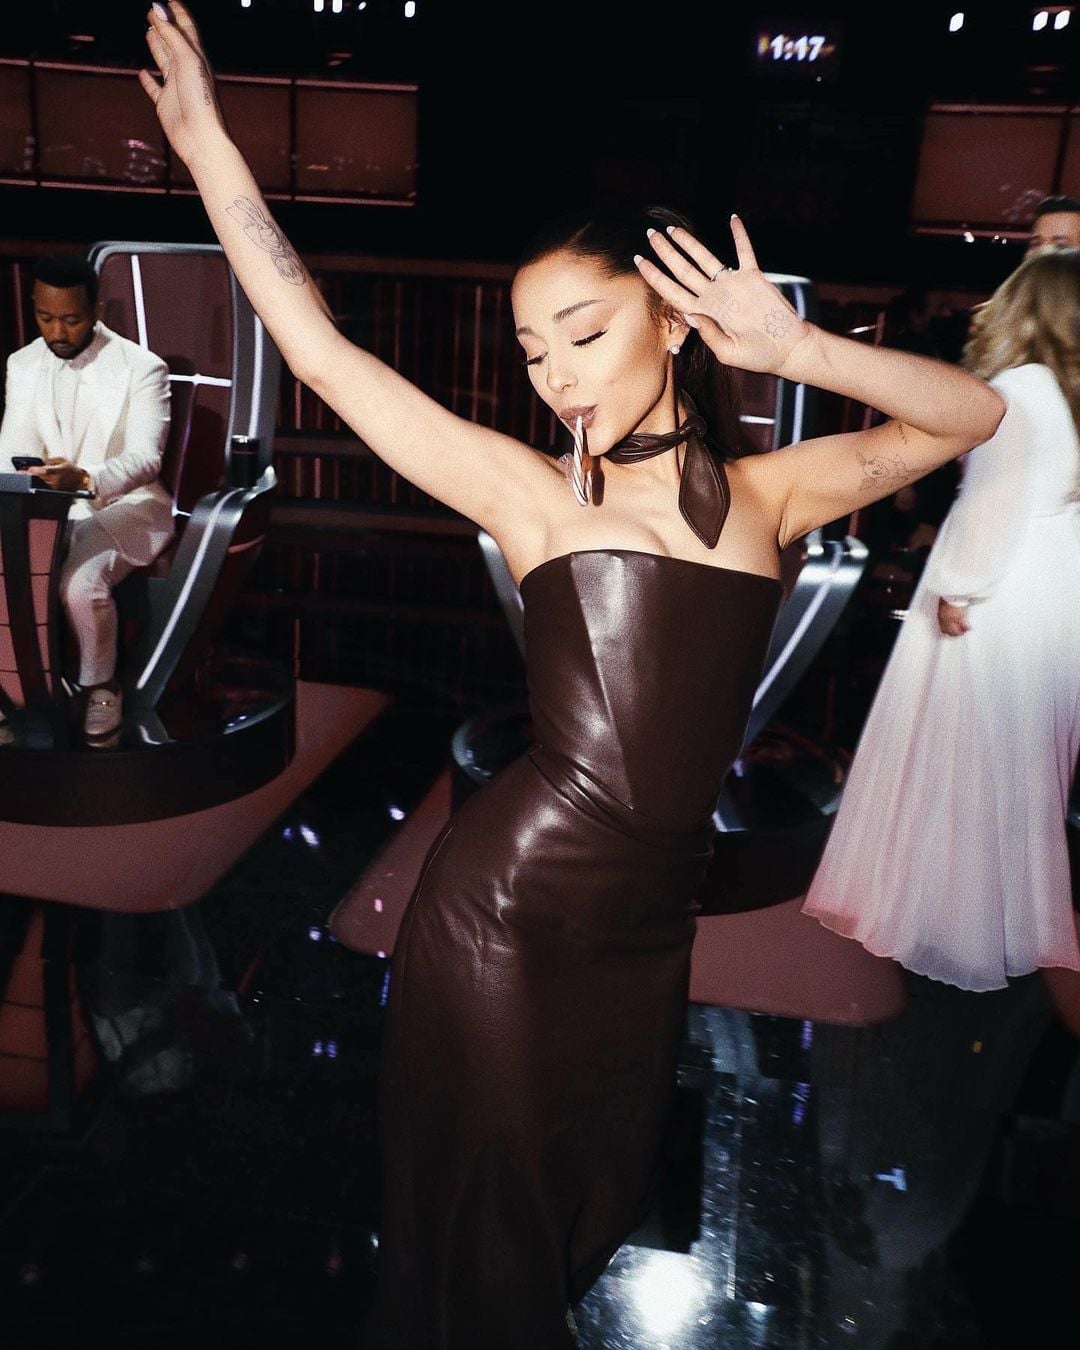 Chiếc váy Vivienne Westwood màu chocolate khoe trọn vóc dáng thanh thoát của Ariana Grande tại chung kết The Voice.